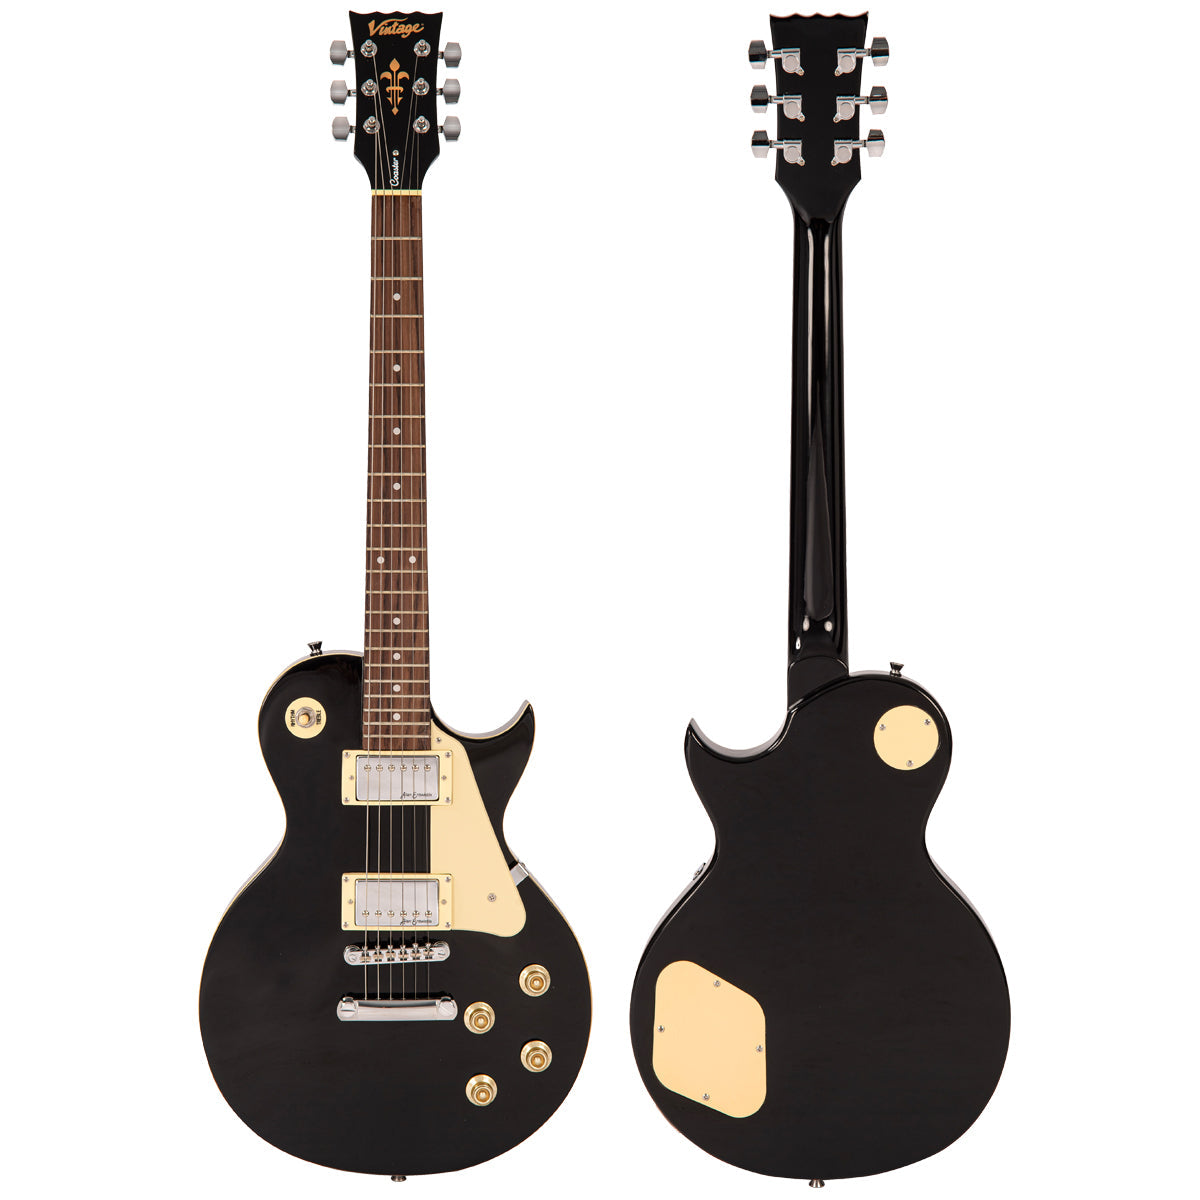 Vintage V10 Coaster Series Electric Guitar Pack ~ Boulevard Black, Electric Guitar for sale at Richards Guitars.